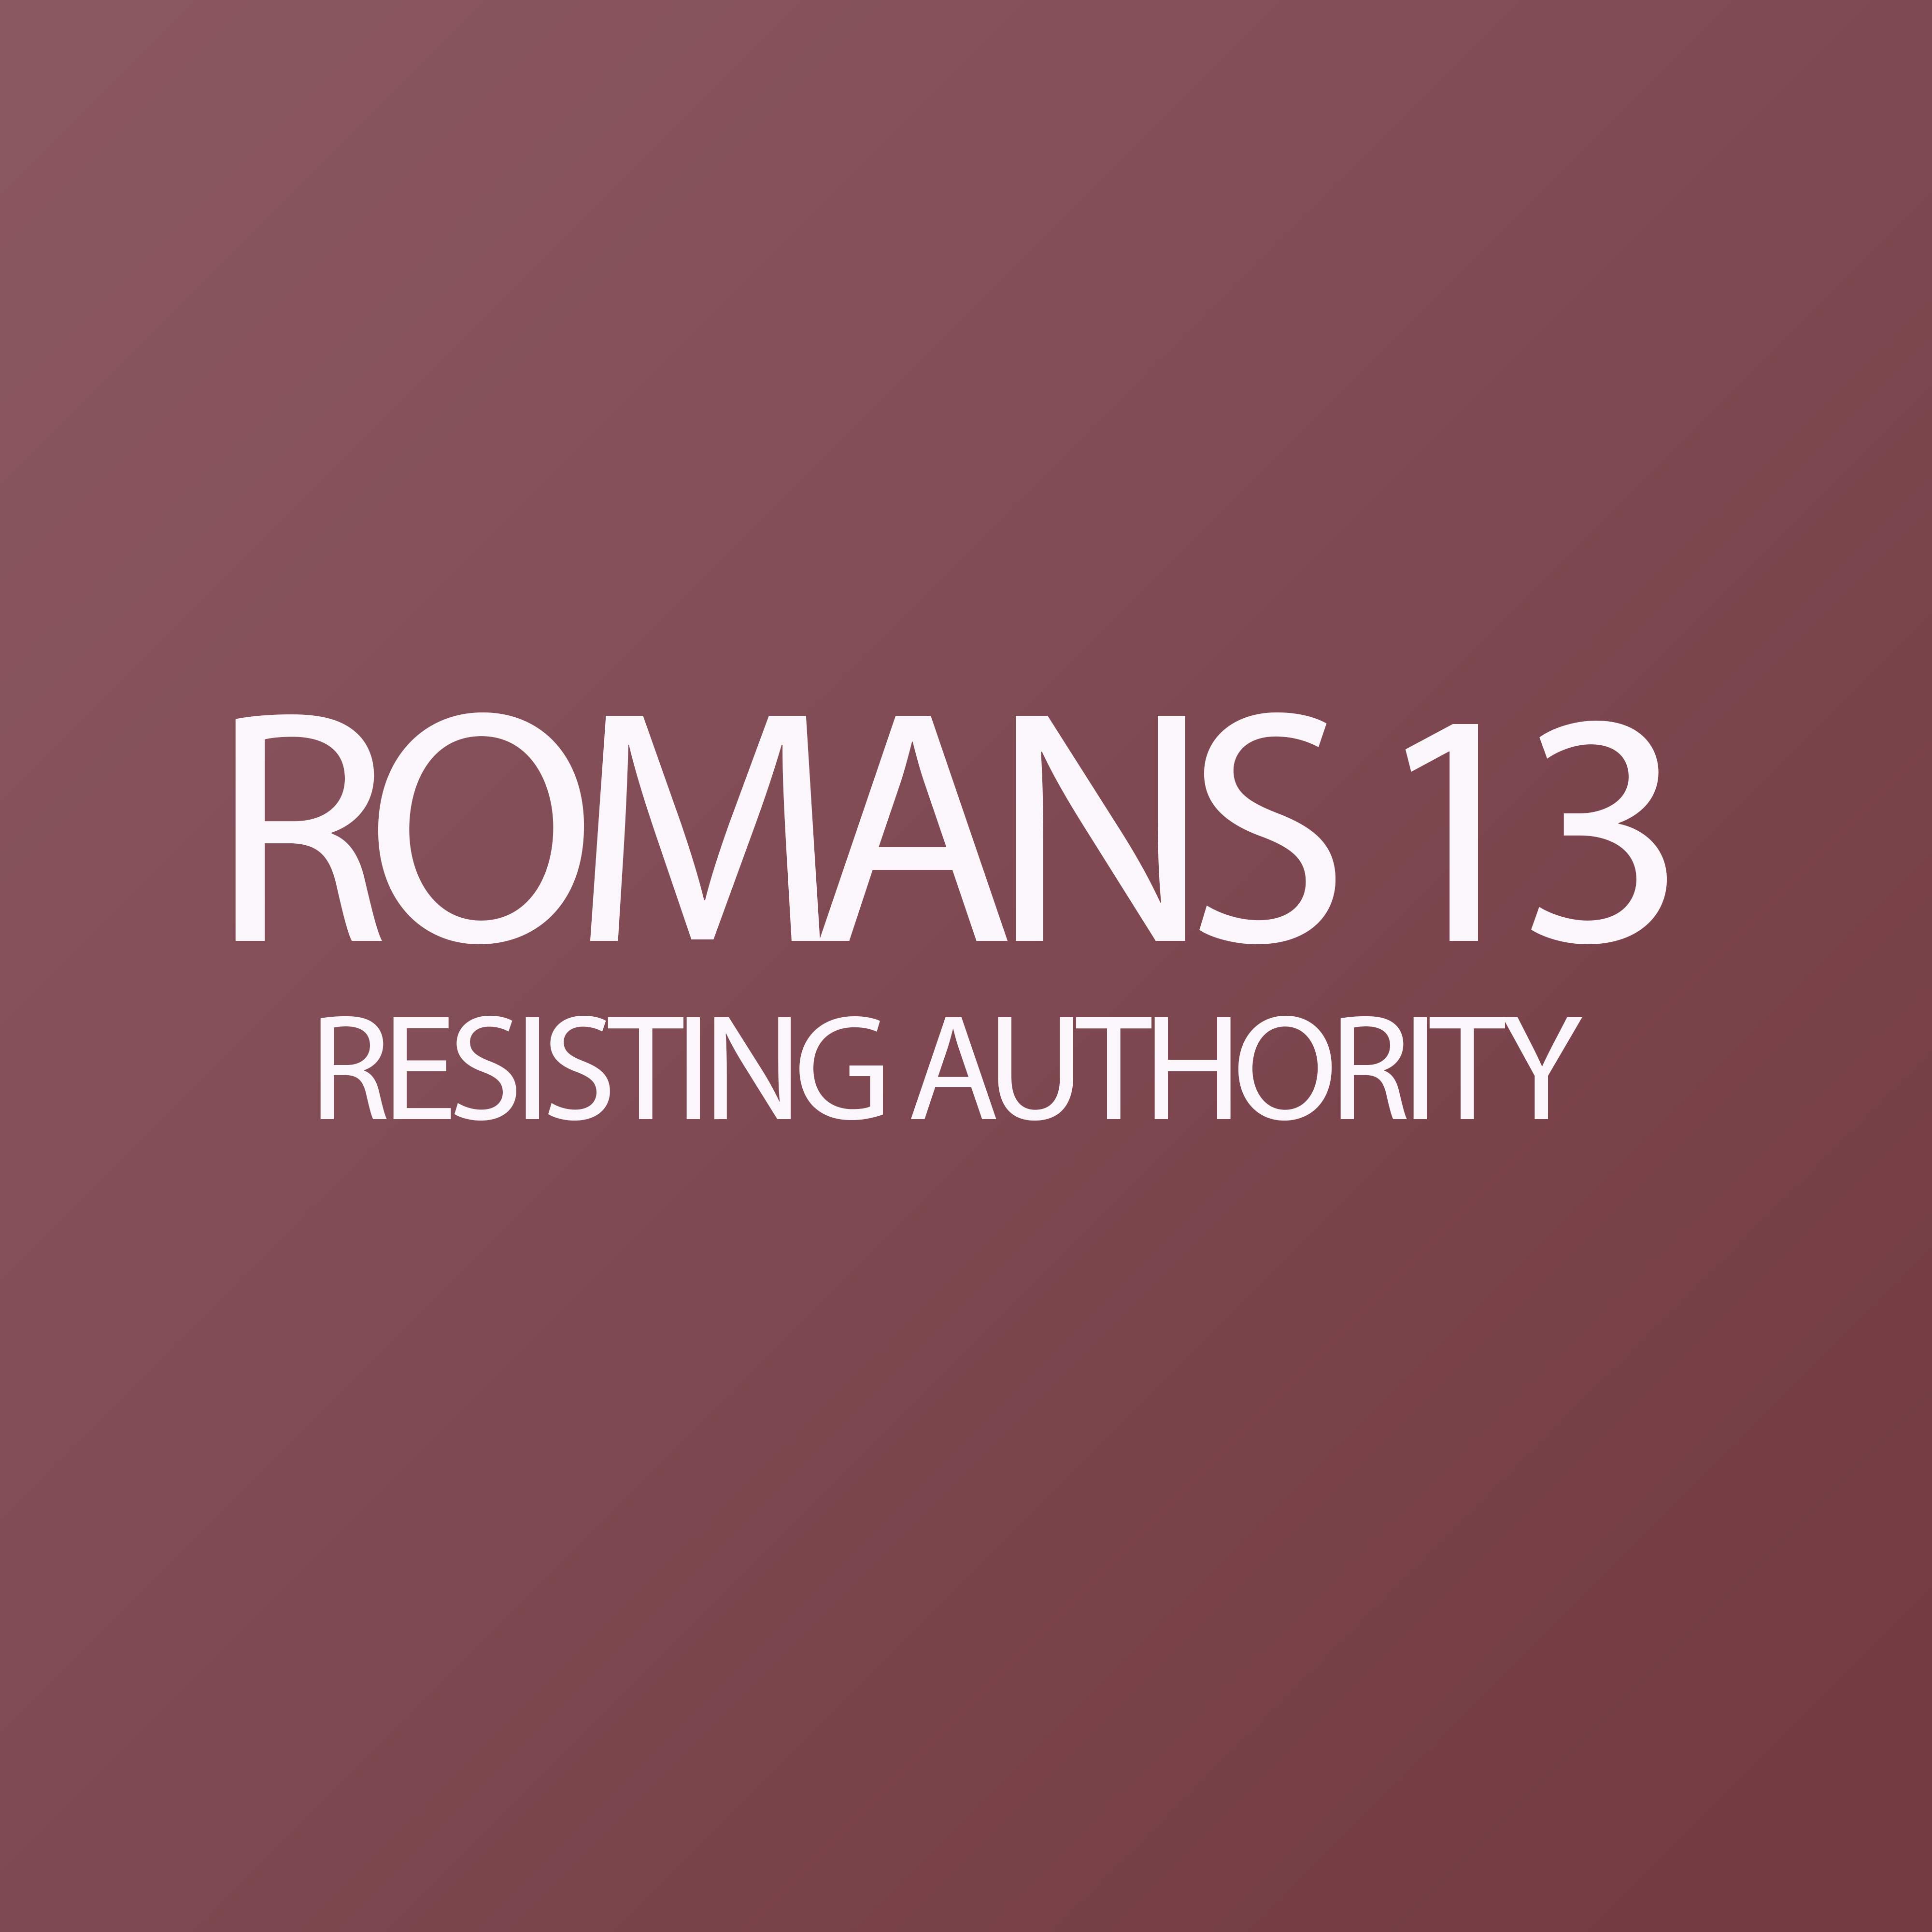 Romans 13 - Resisting Authority